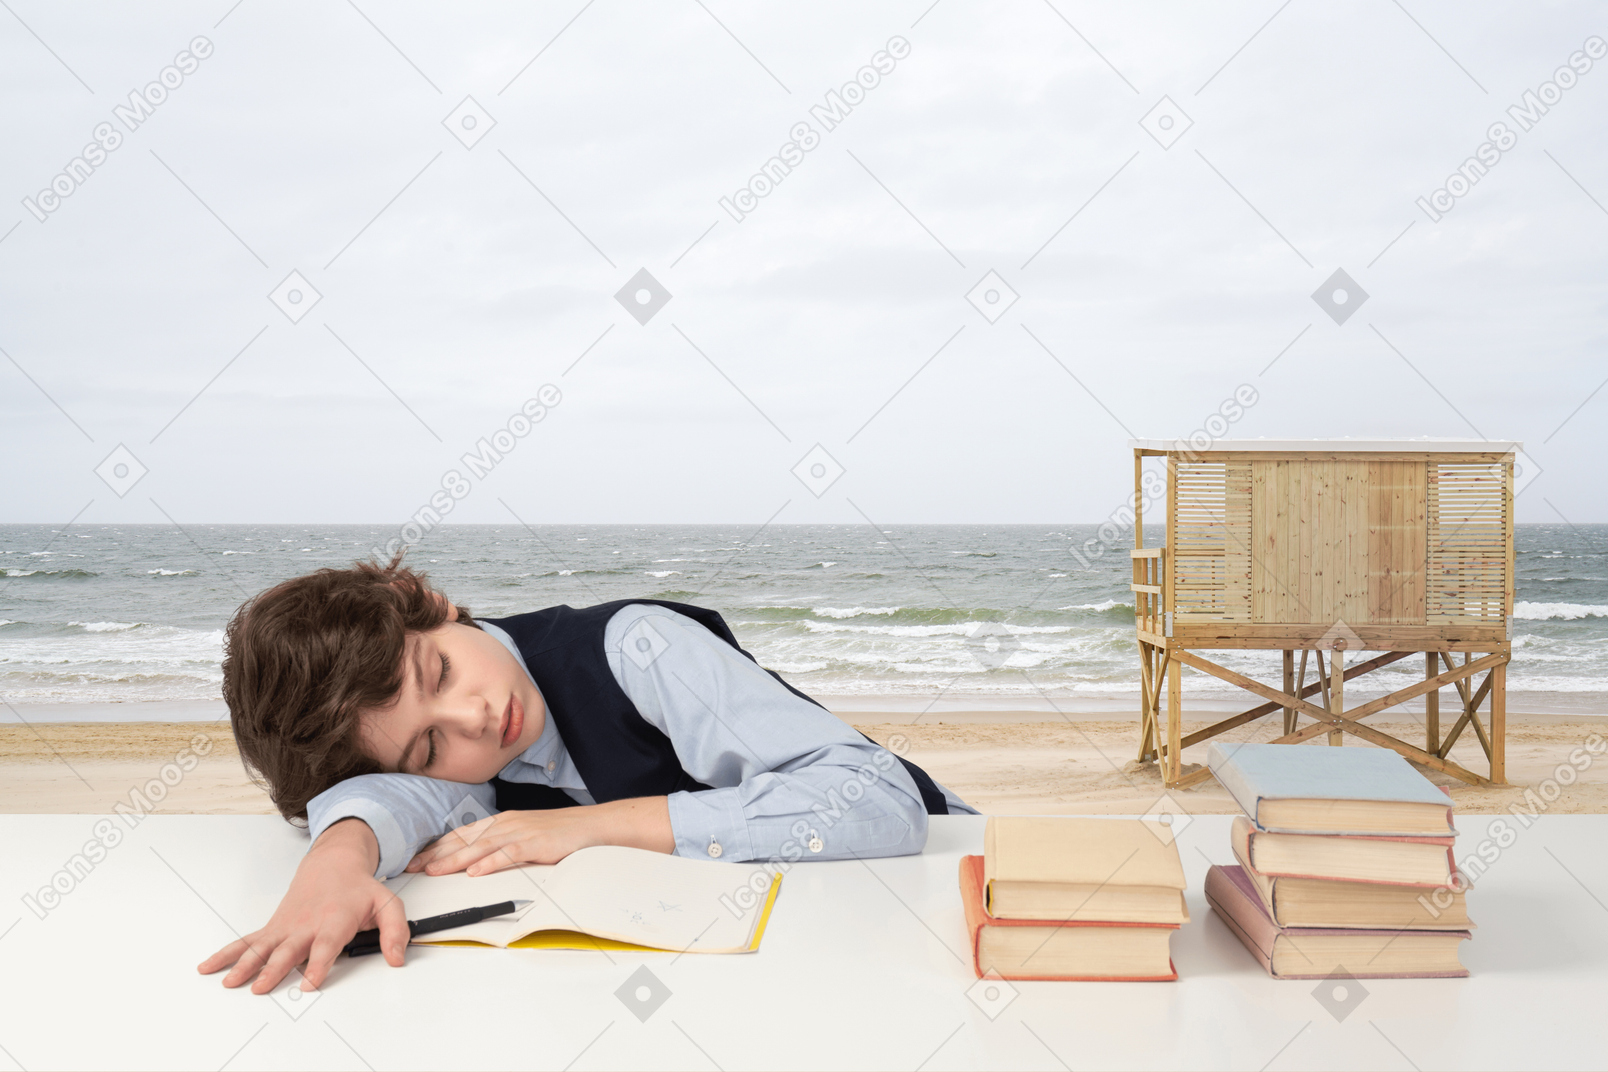 A boy sleeping on a beach with books on a table